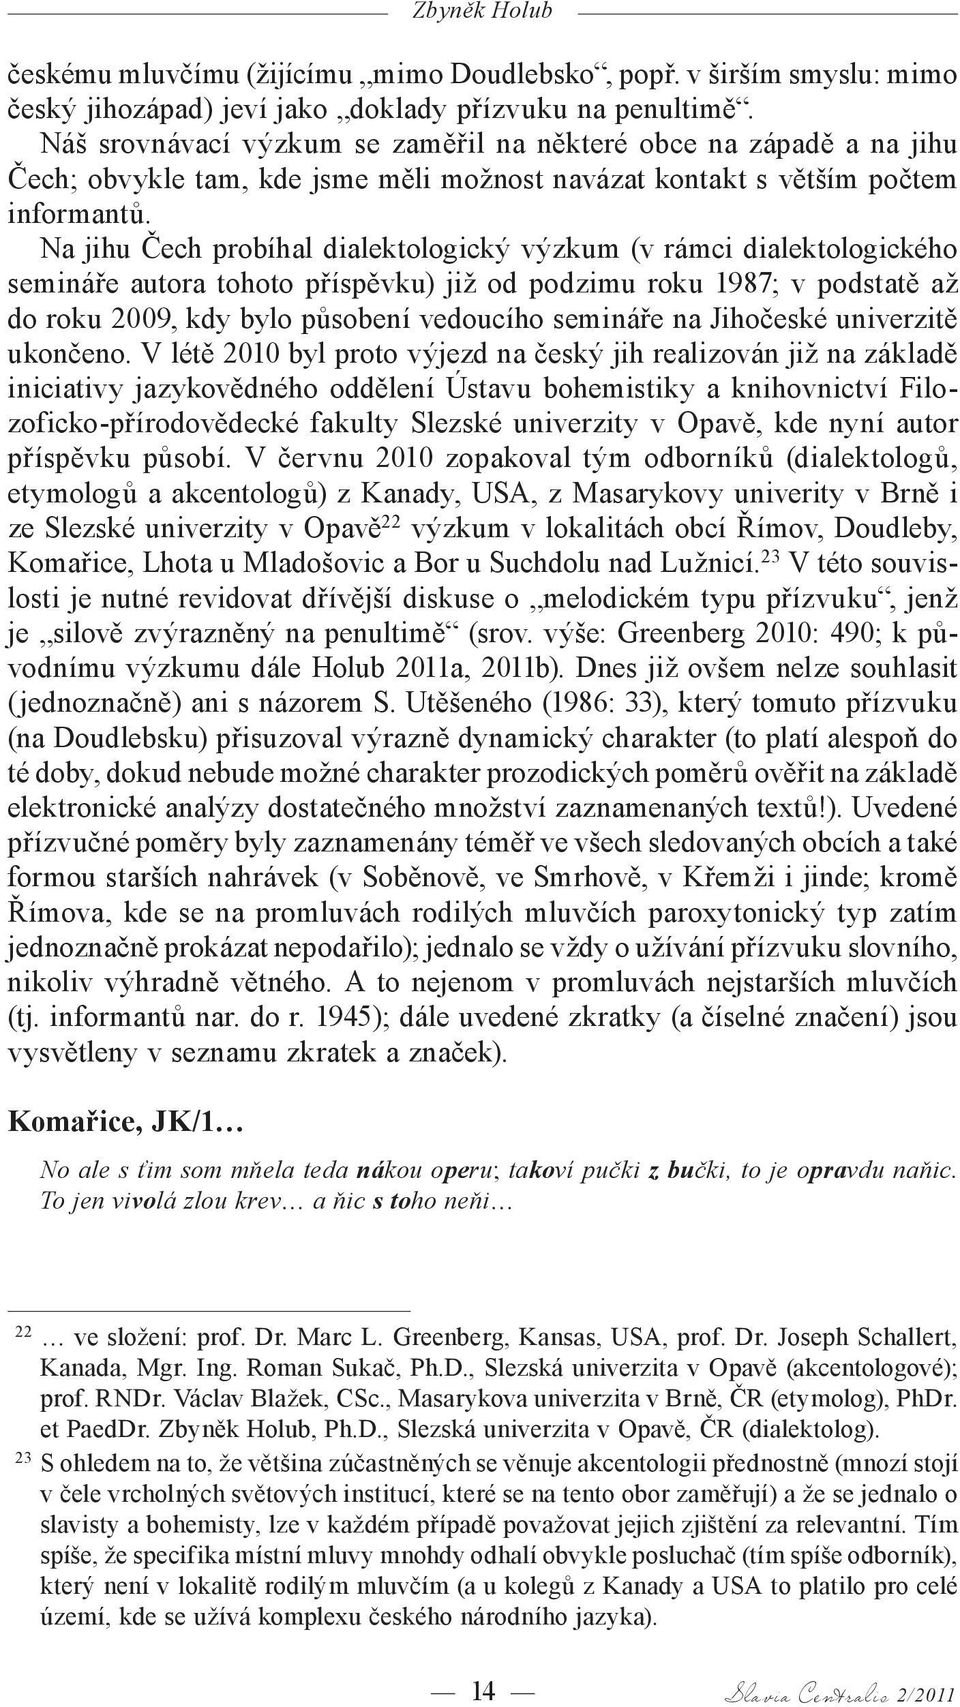 Na jihu Čech probíhal dialektologický výzkum (v rámci dialektologického semináře autora tohoto příspěvku) již od podzimu roku 1987; v podstatě až do roku 2009, kdy bylo působení vedoucího semináře na